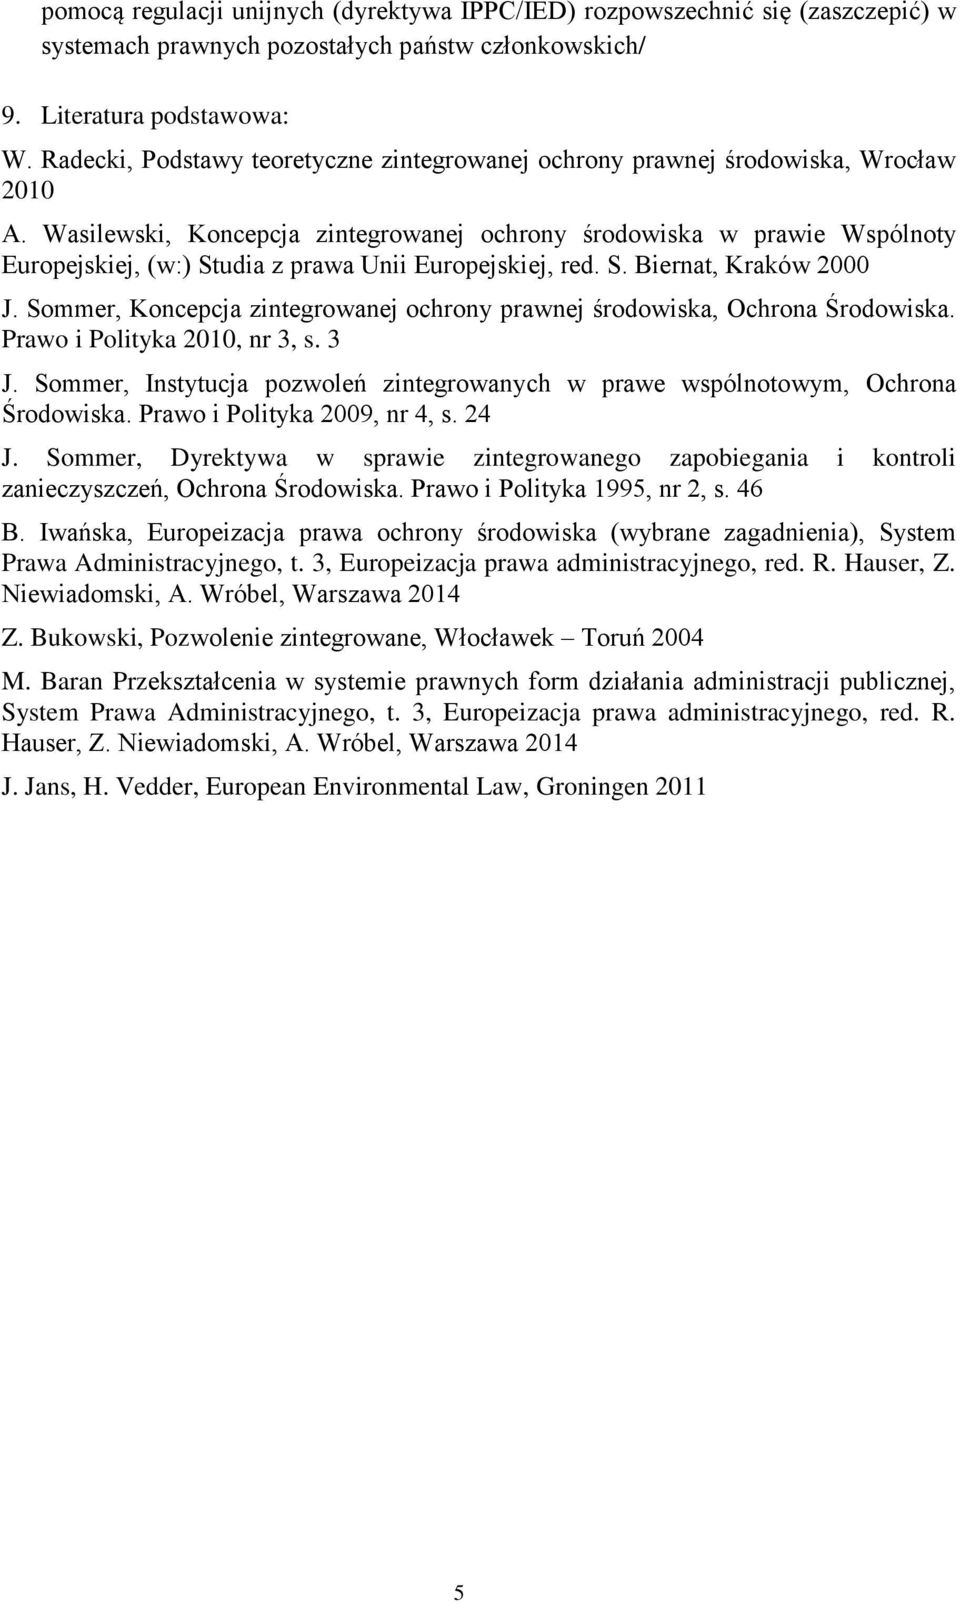 Wasilewski, Koncepcja zintegrowanej ochrony środowiska w prawie Wspólnoty Europejskiej, (w:) Studia z prawa Unii Europejskiej, red. S. Biernat, Kraków 2000 J.